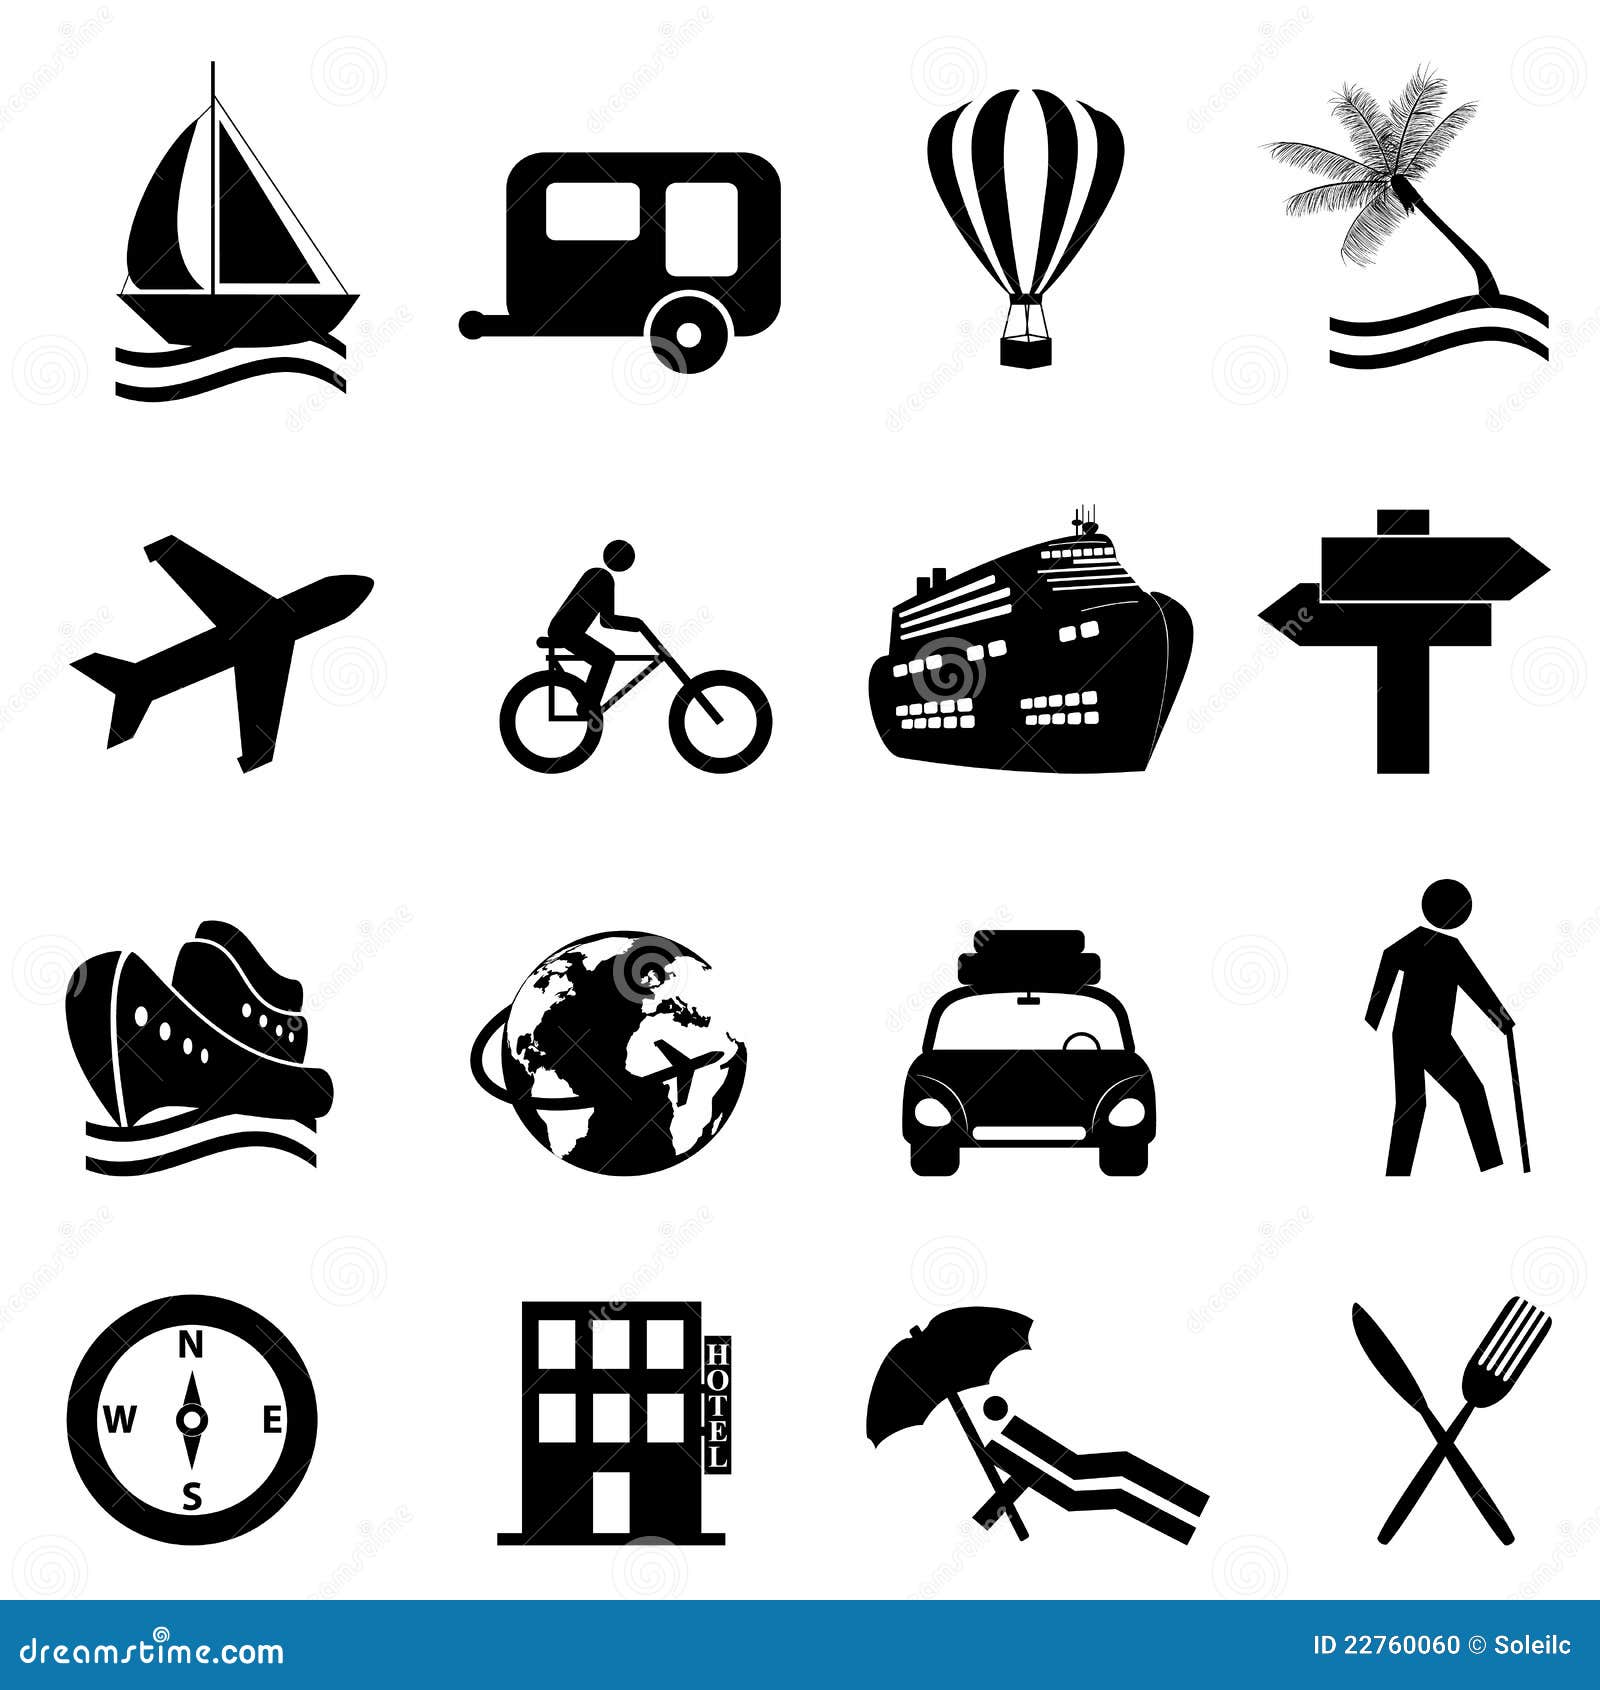 sport icon, four square icon, foursquare icon, recreational icon, game  icon, schoolyard icon, ball icon